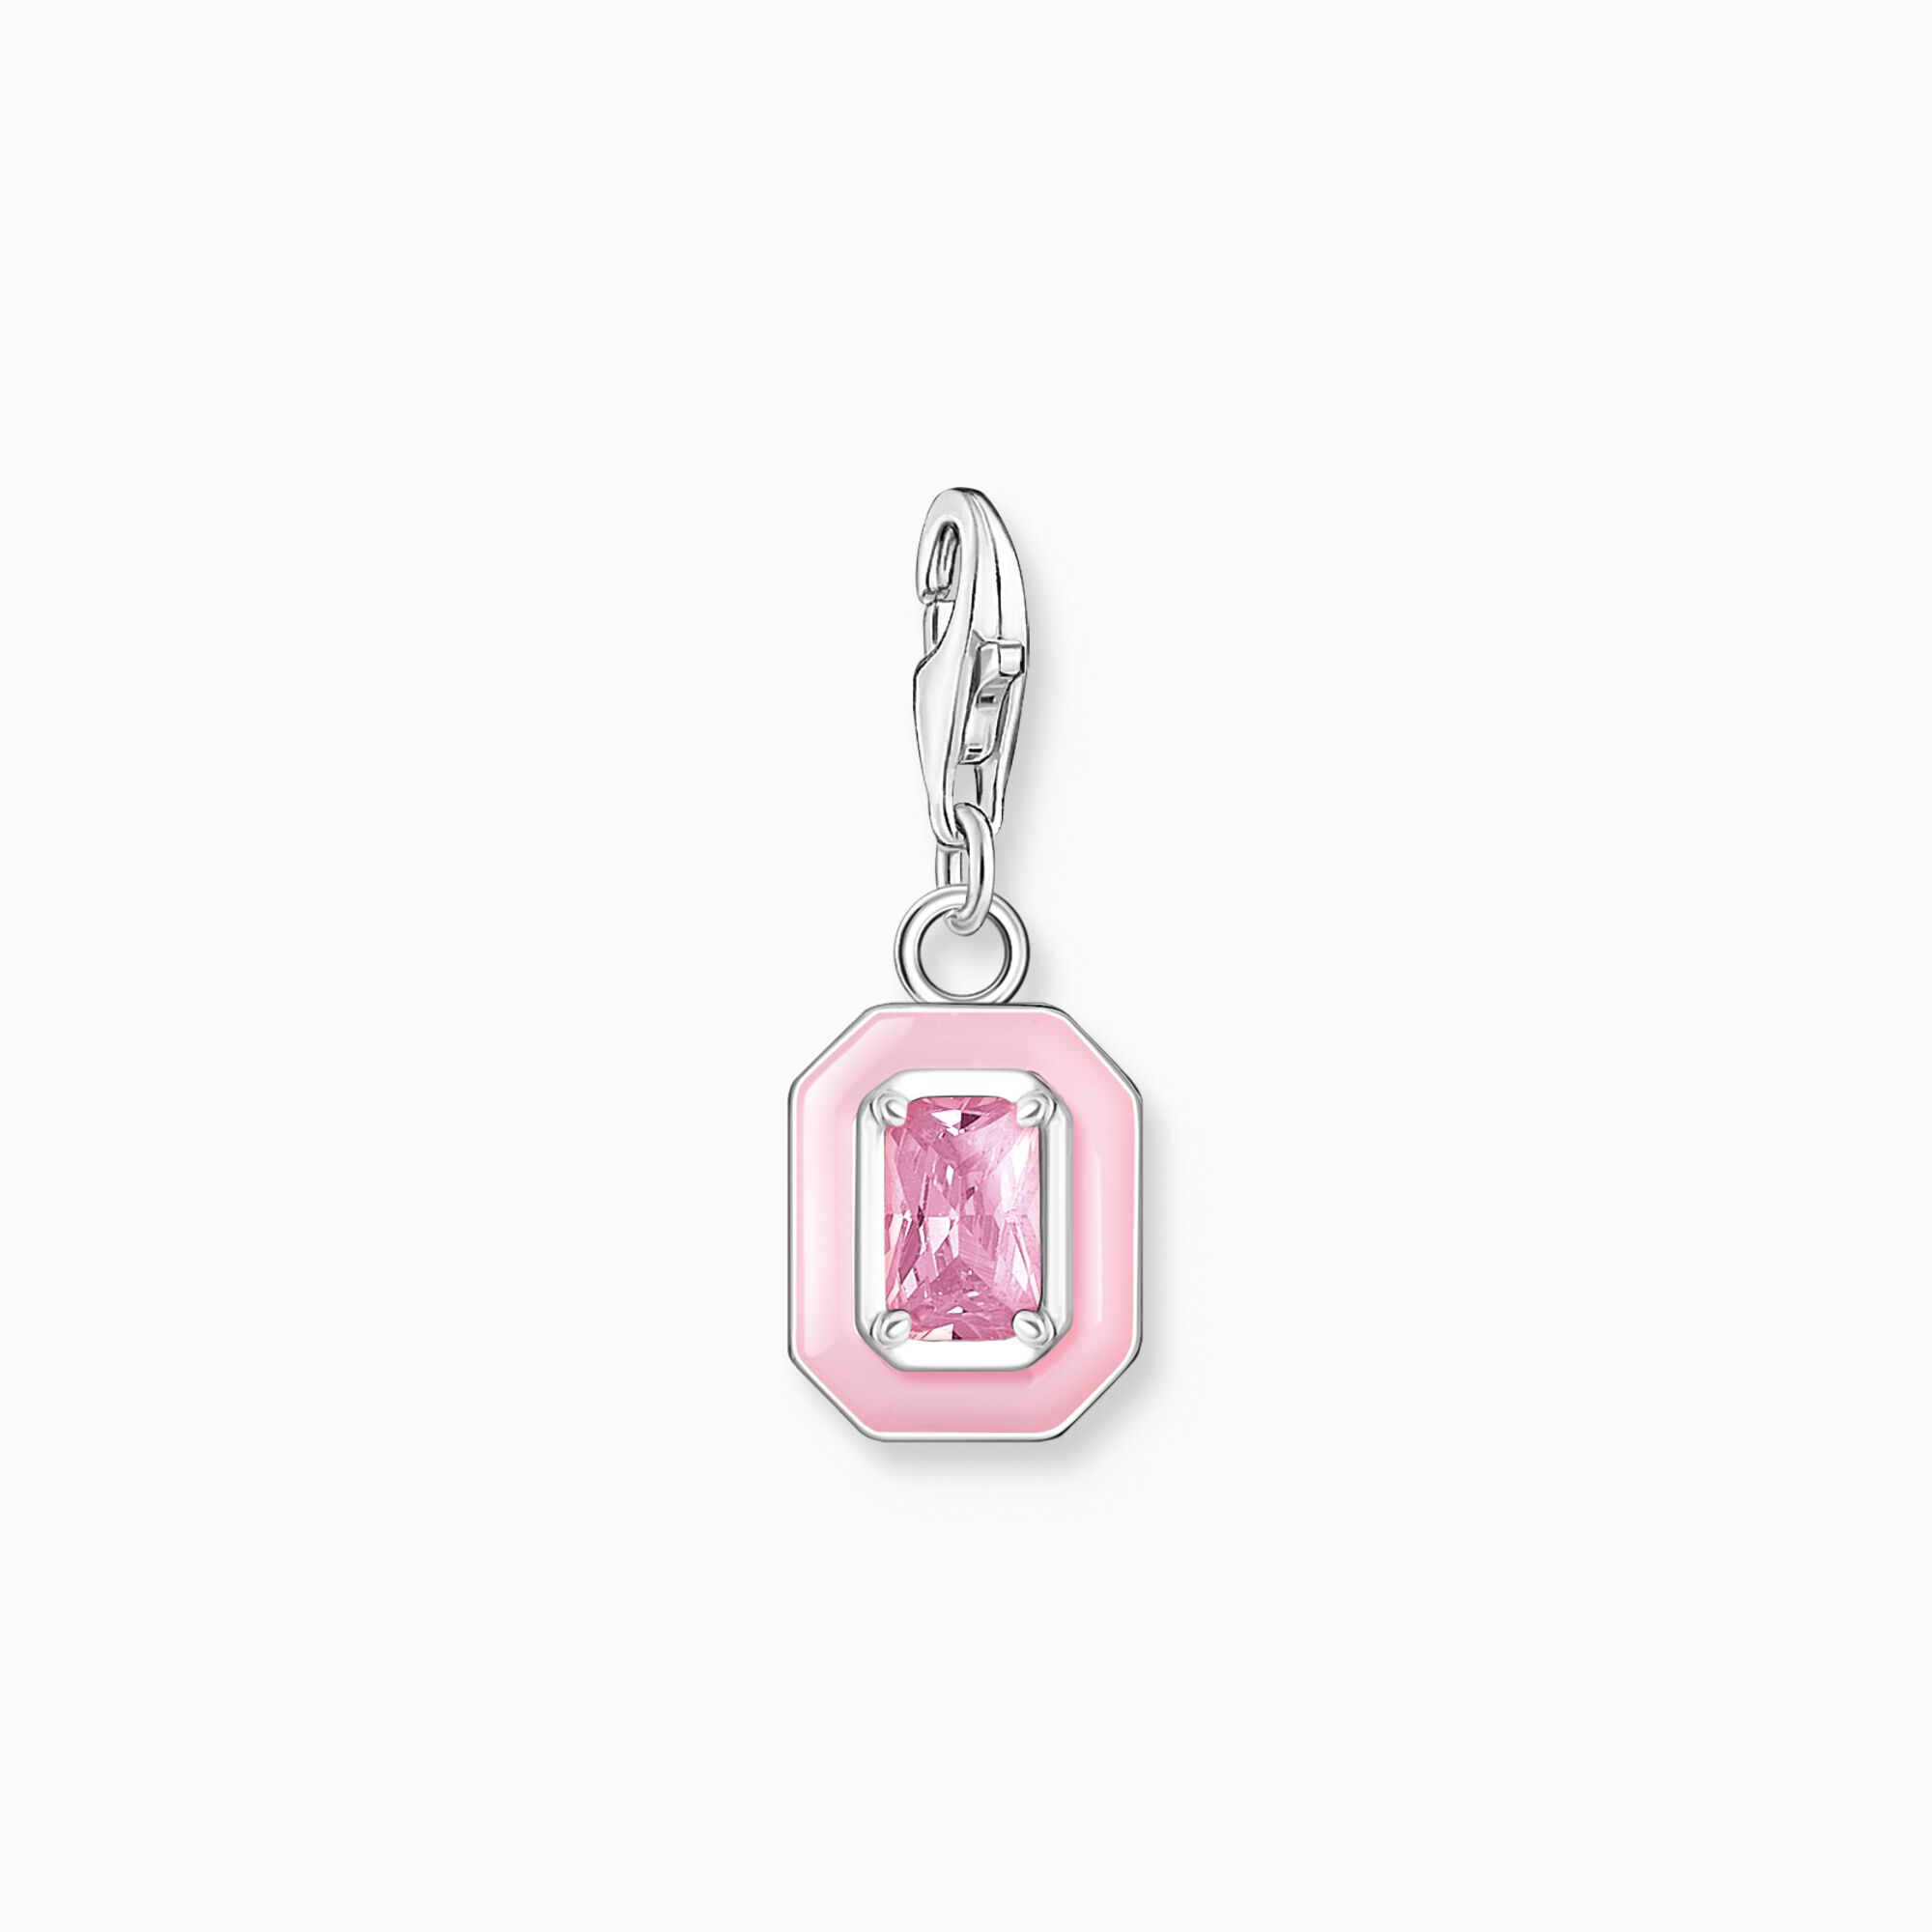 Colgante Charm piedra rosa plata de la colección Charm Club en la tienda online de THOMAS SABO